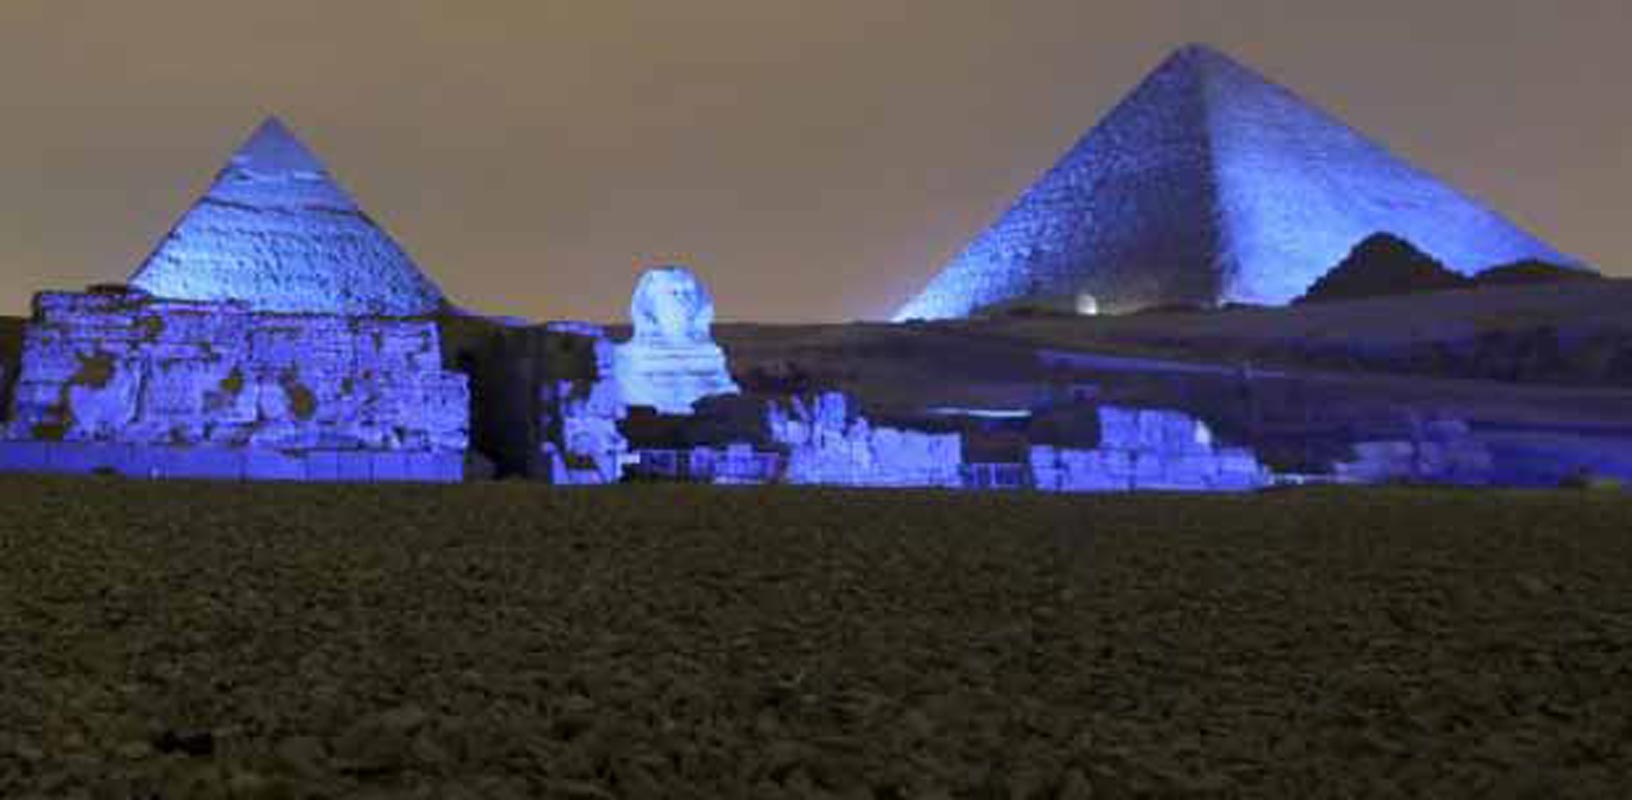 Égypte : les scientifiques veulent percer les "secrets" des pyramides